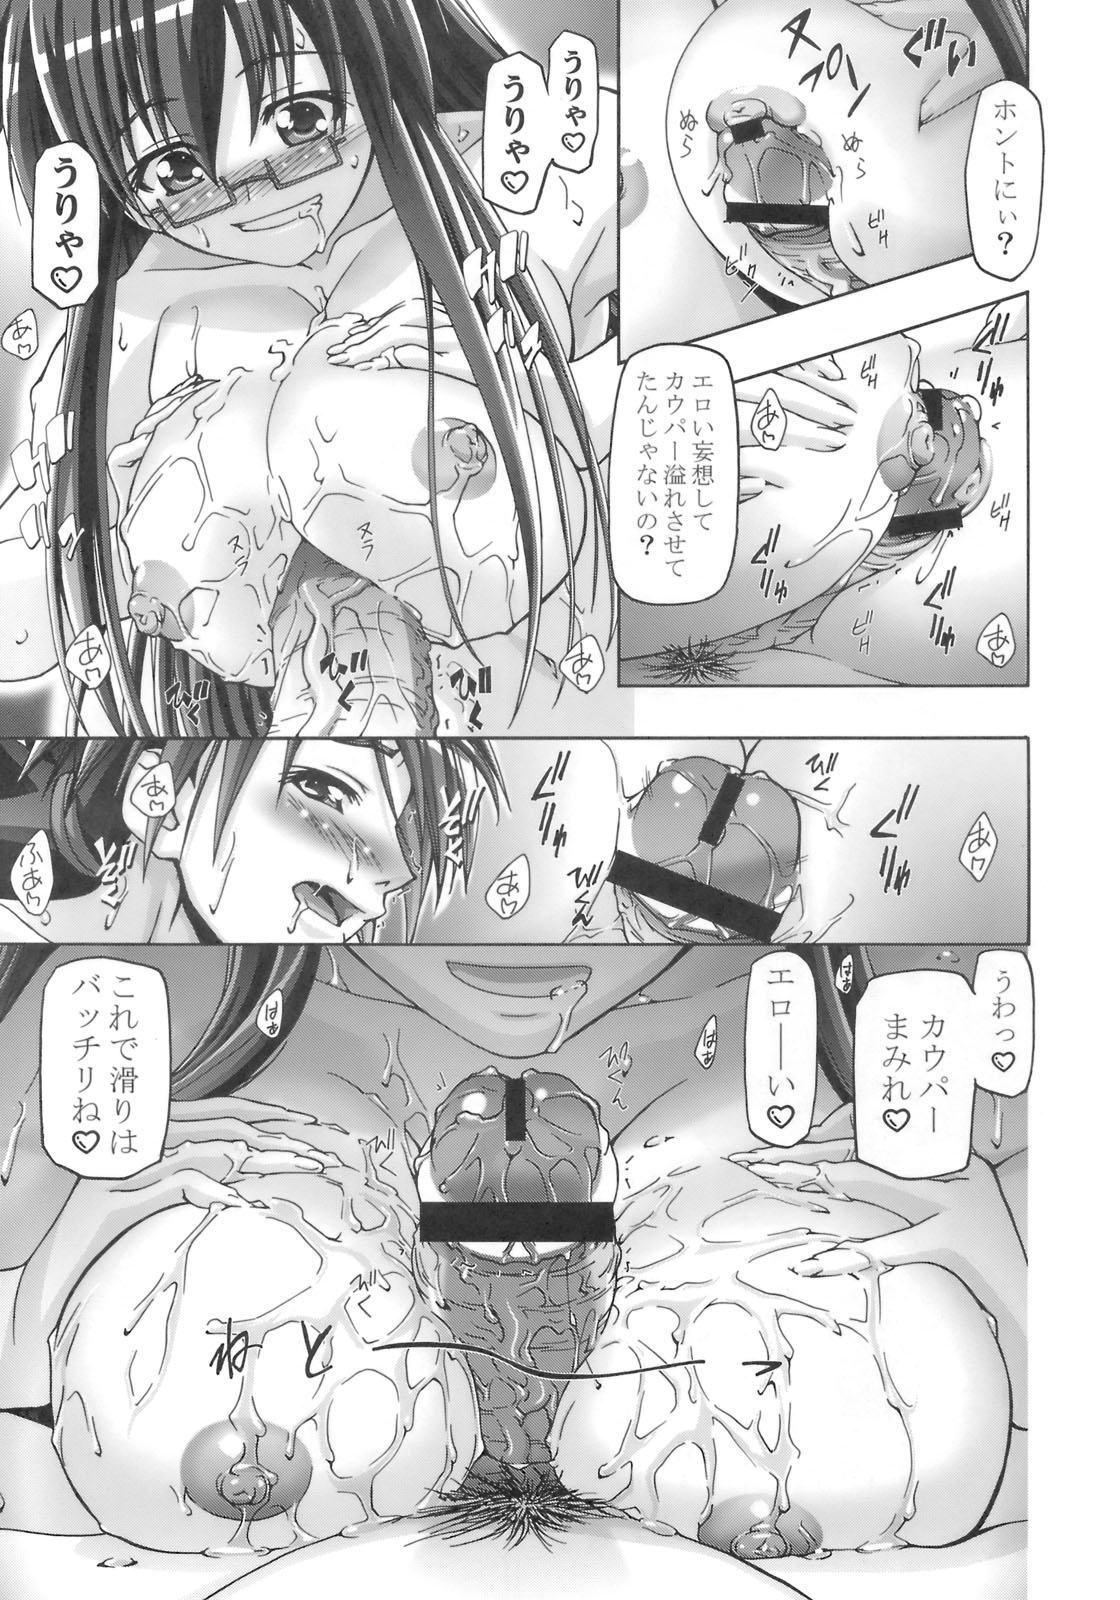 (SC39) [Gambler Club (Kousaka Jun)] Mahora Gakuen Tyuutoubu 3-A 3 Jikanme Negi X Haruna (Mahou Sensei Negima!) page 8 full